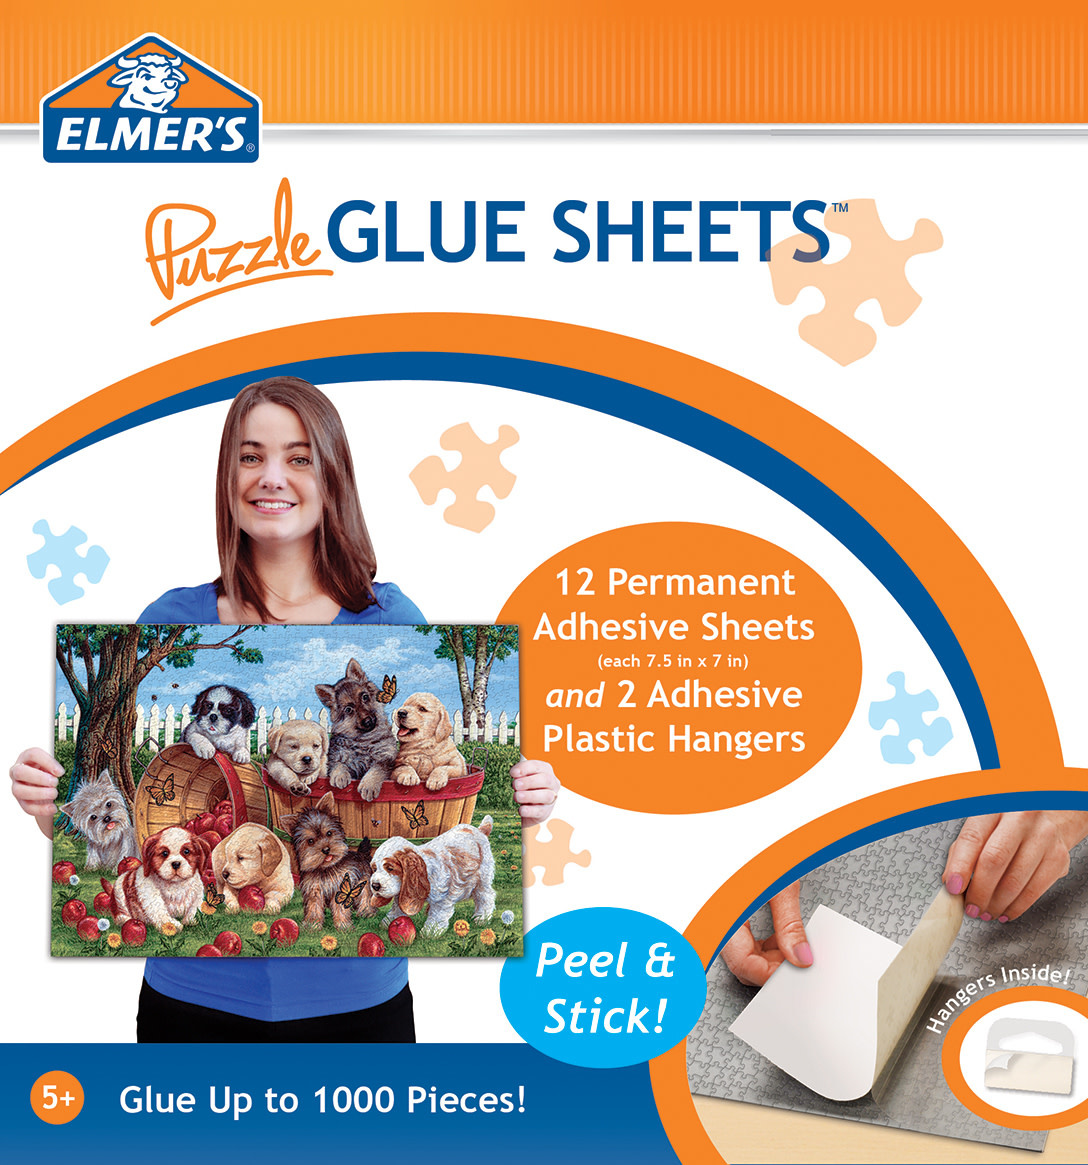 Smart Puzzle Glue Sheets